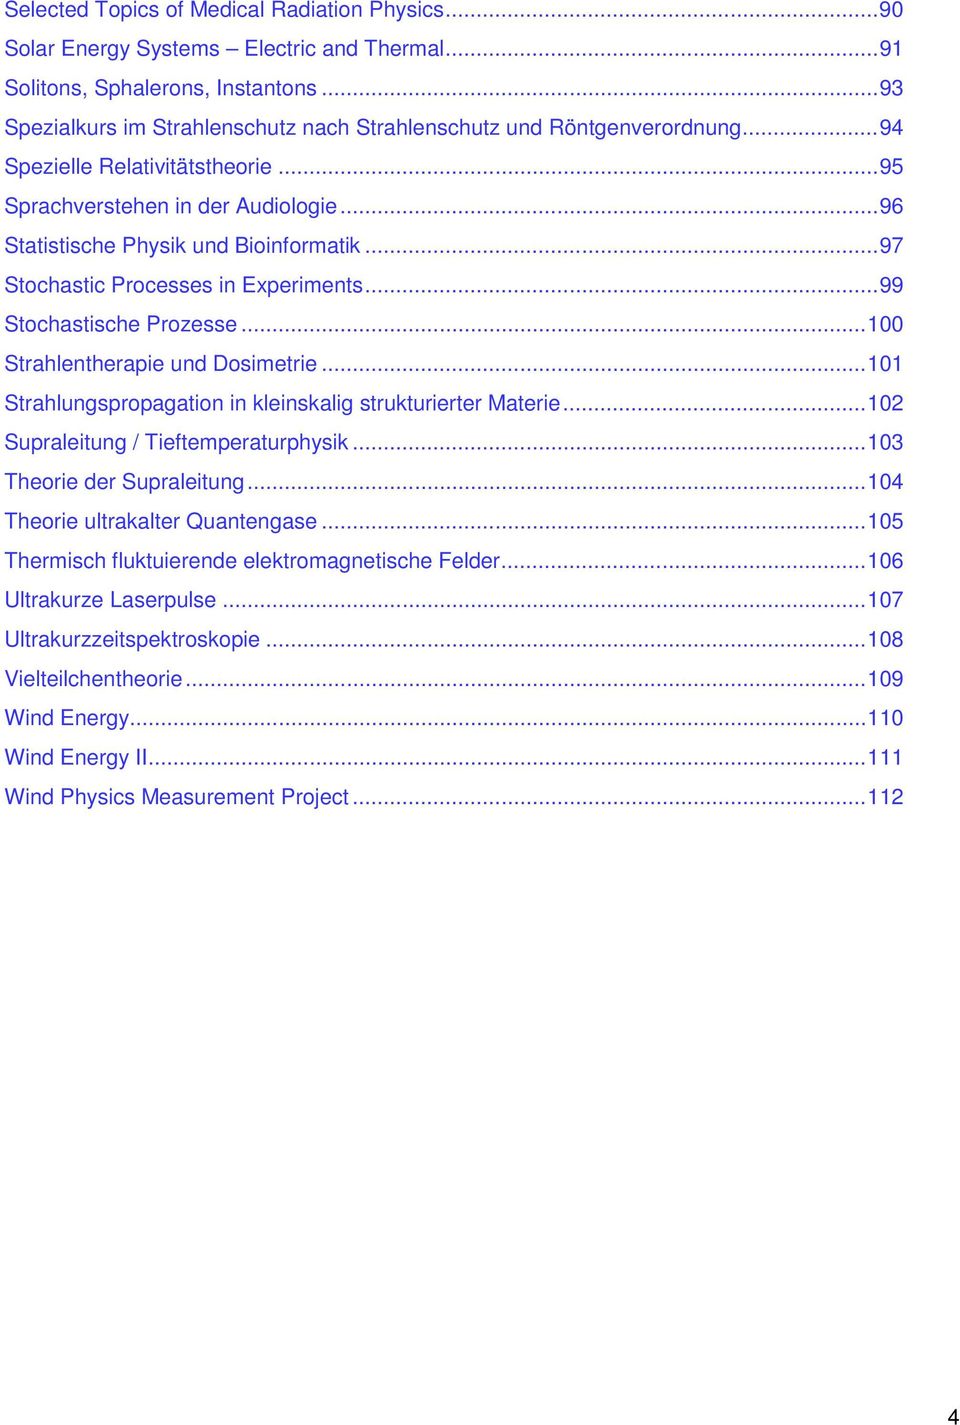 .. 97 Stochastic Processes in Experiments... 99 Stochastische Prozesse... 100 Strahlentherapie und Dosimetrie... 101 Strahlungspropagation in kleinskalig strukturierter Materie.